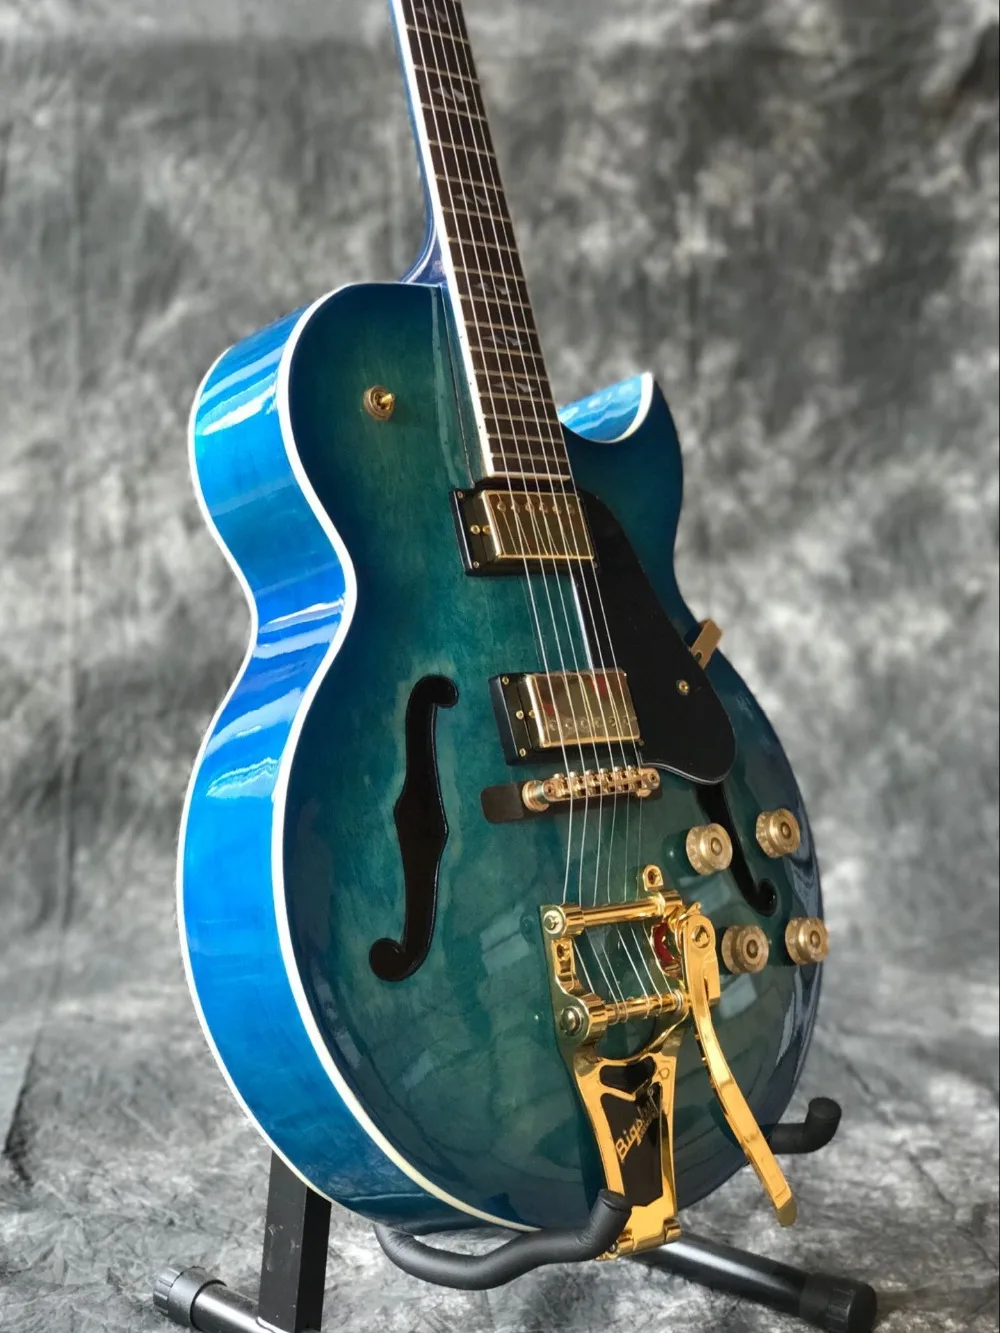 

Электрическая гитара Jazz с полым корпусом синего цвета, черная накладка для грифа из палисандра, 6 отверстий, ручная работа